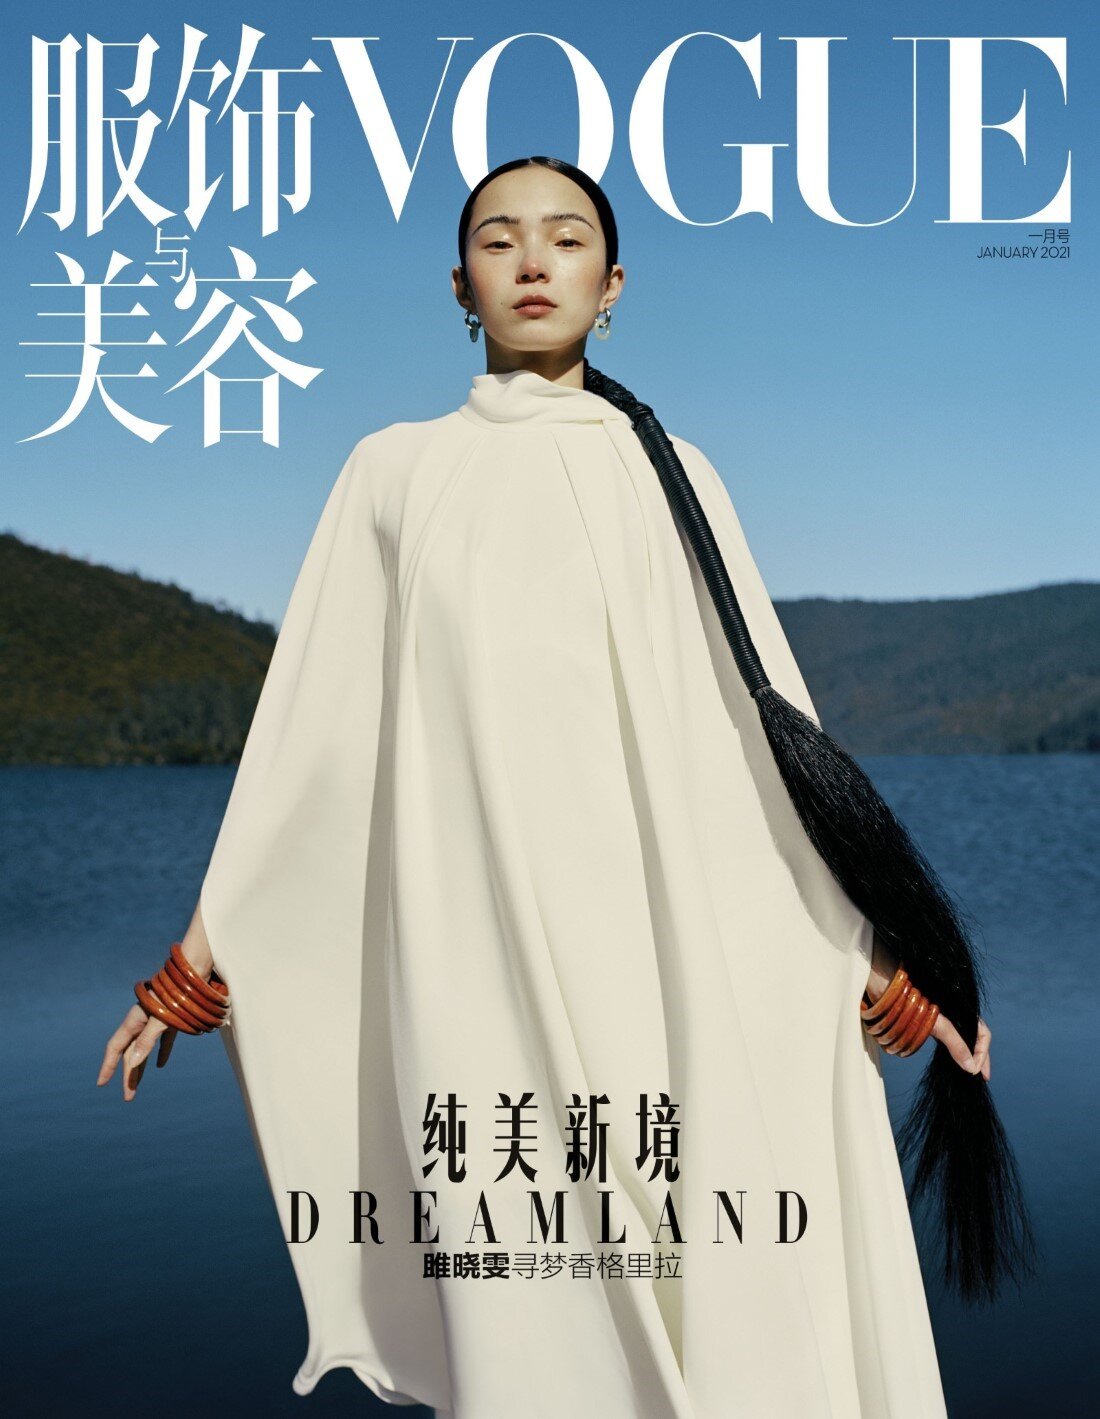 Xiao Wen Ju by Leslie Zhang Vogue China Jan 2021 (11).jpg